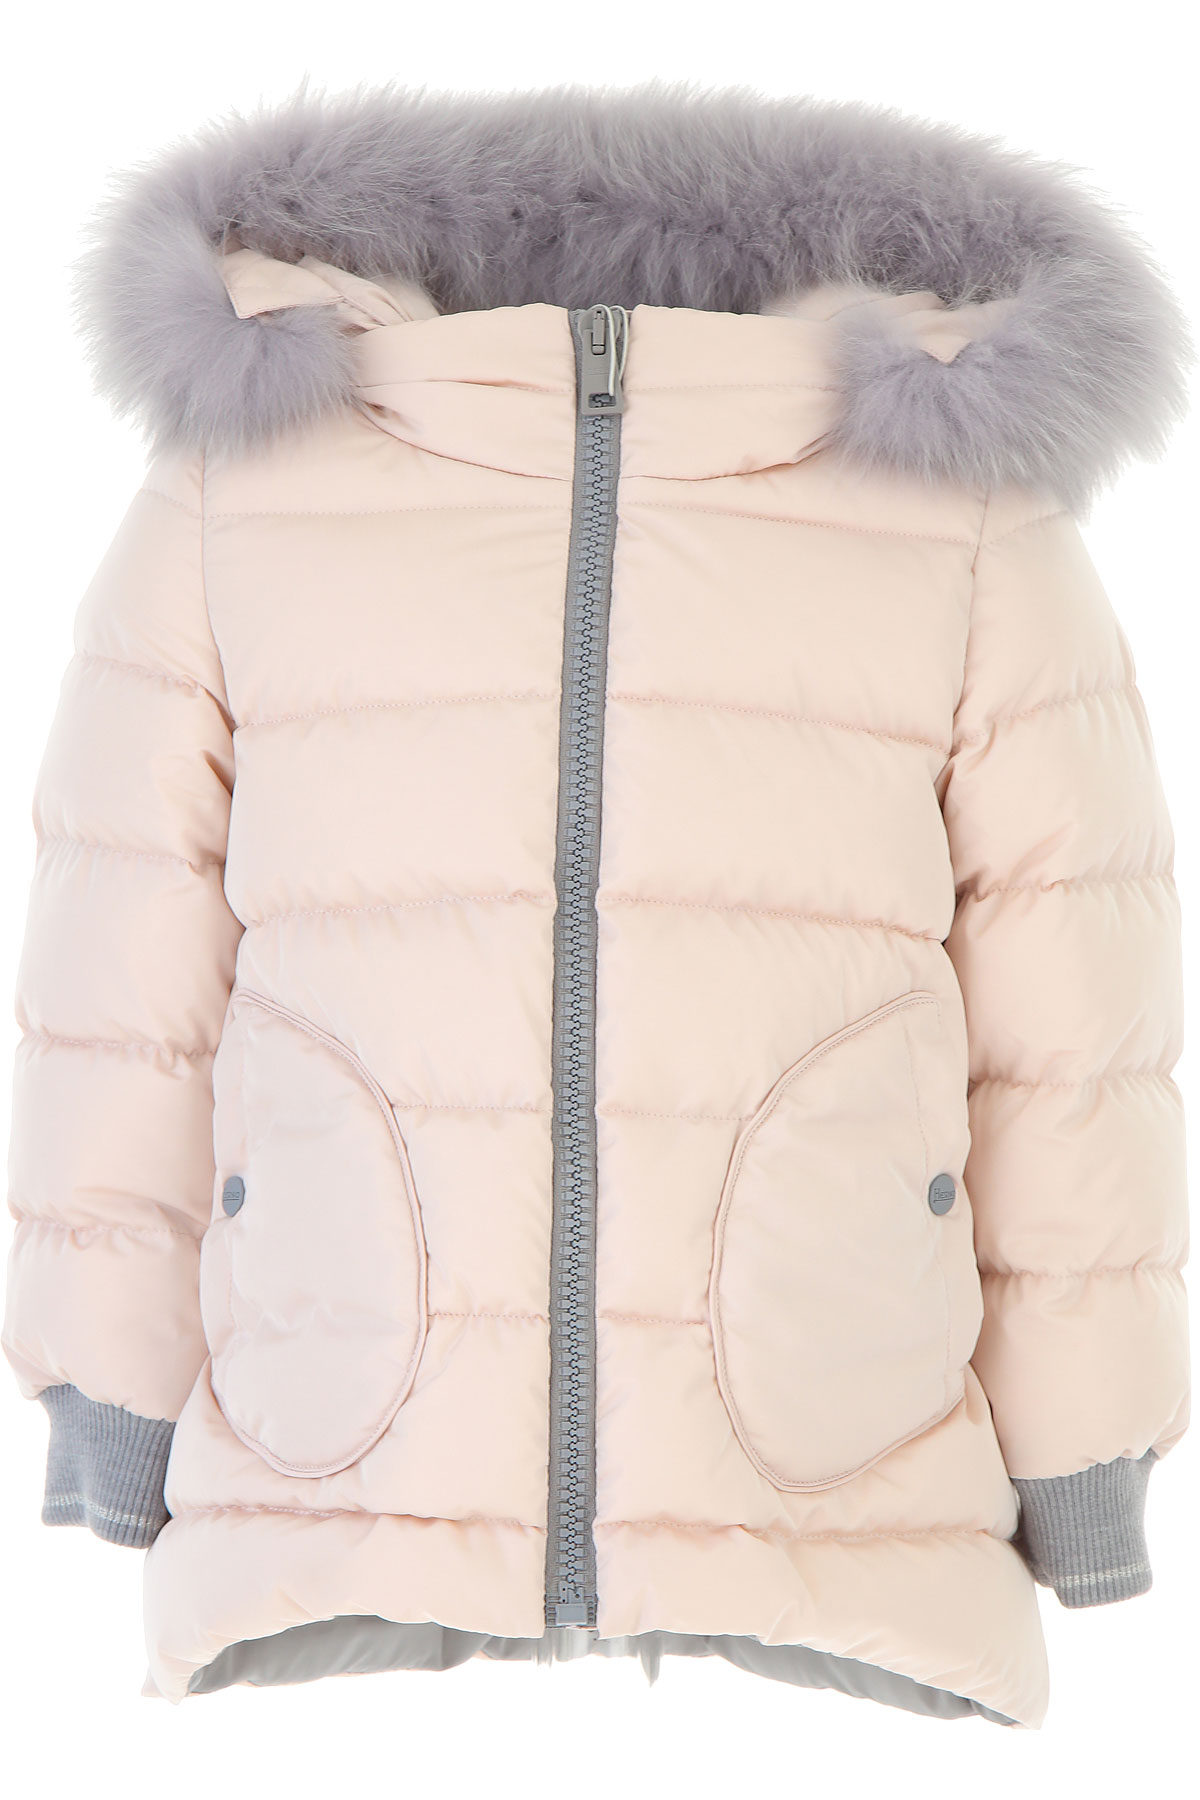 Herno Kinder Daunen Jacke für Mädchen, Soft Shell Ski Jacken Günstig im Sale, Pink, Polyamid, 2017, 10Y 6Y 8Y